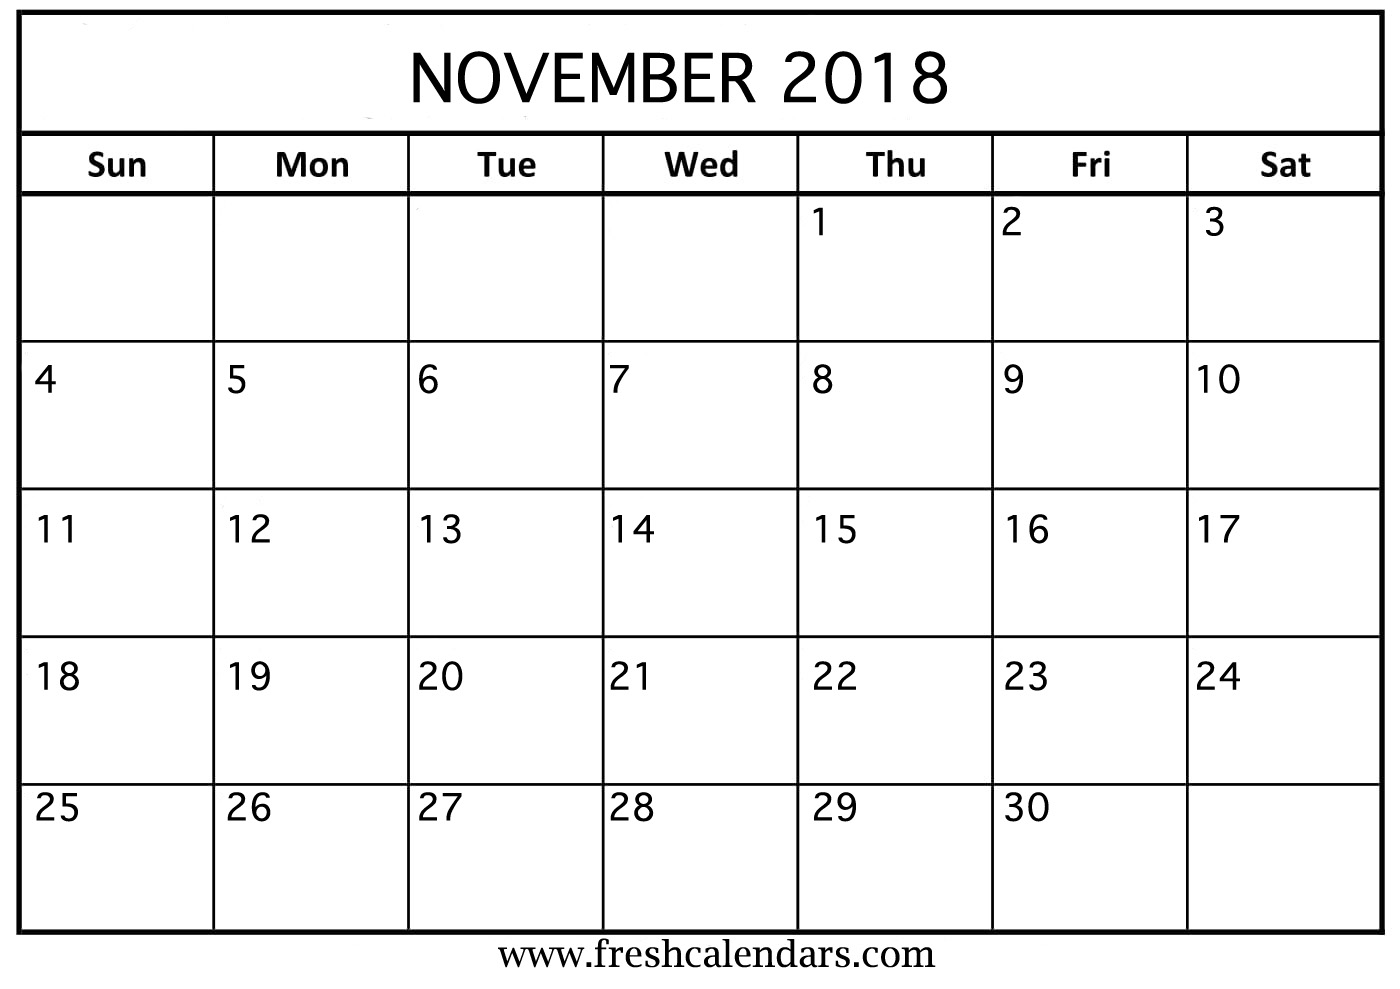 Nov 2018 Calendar